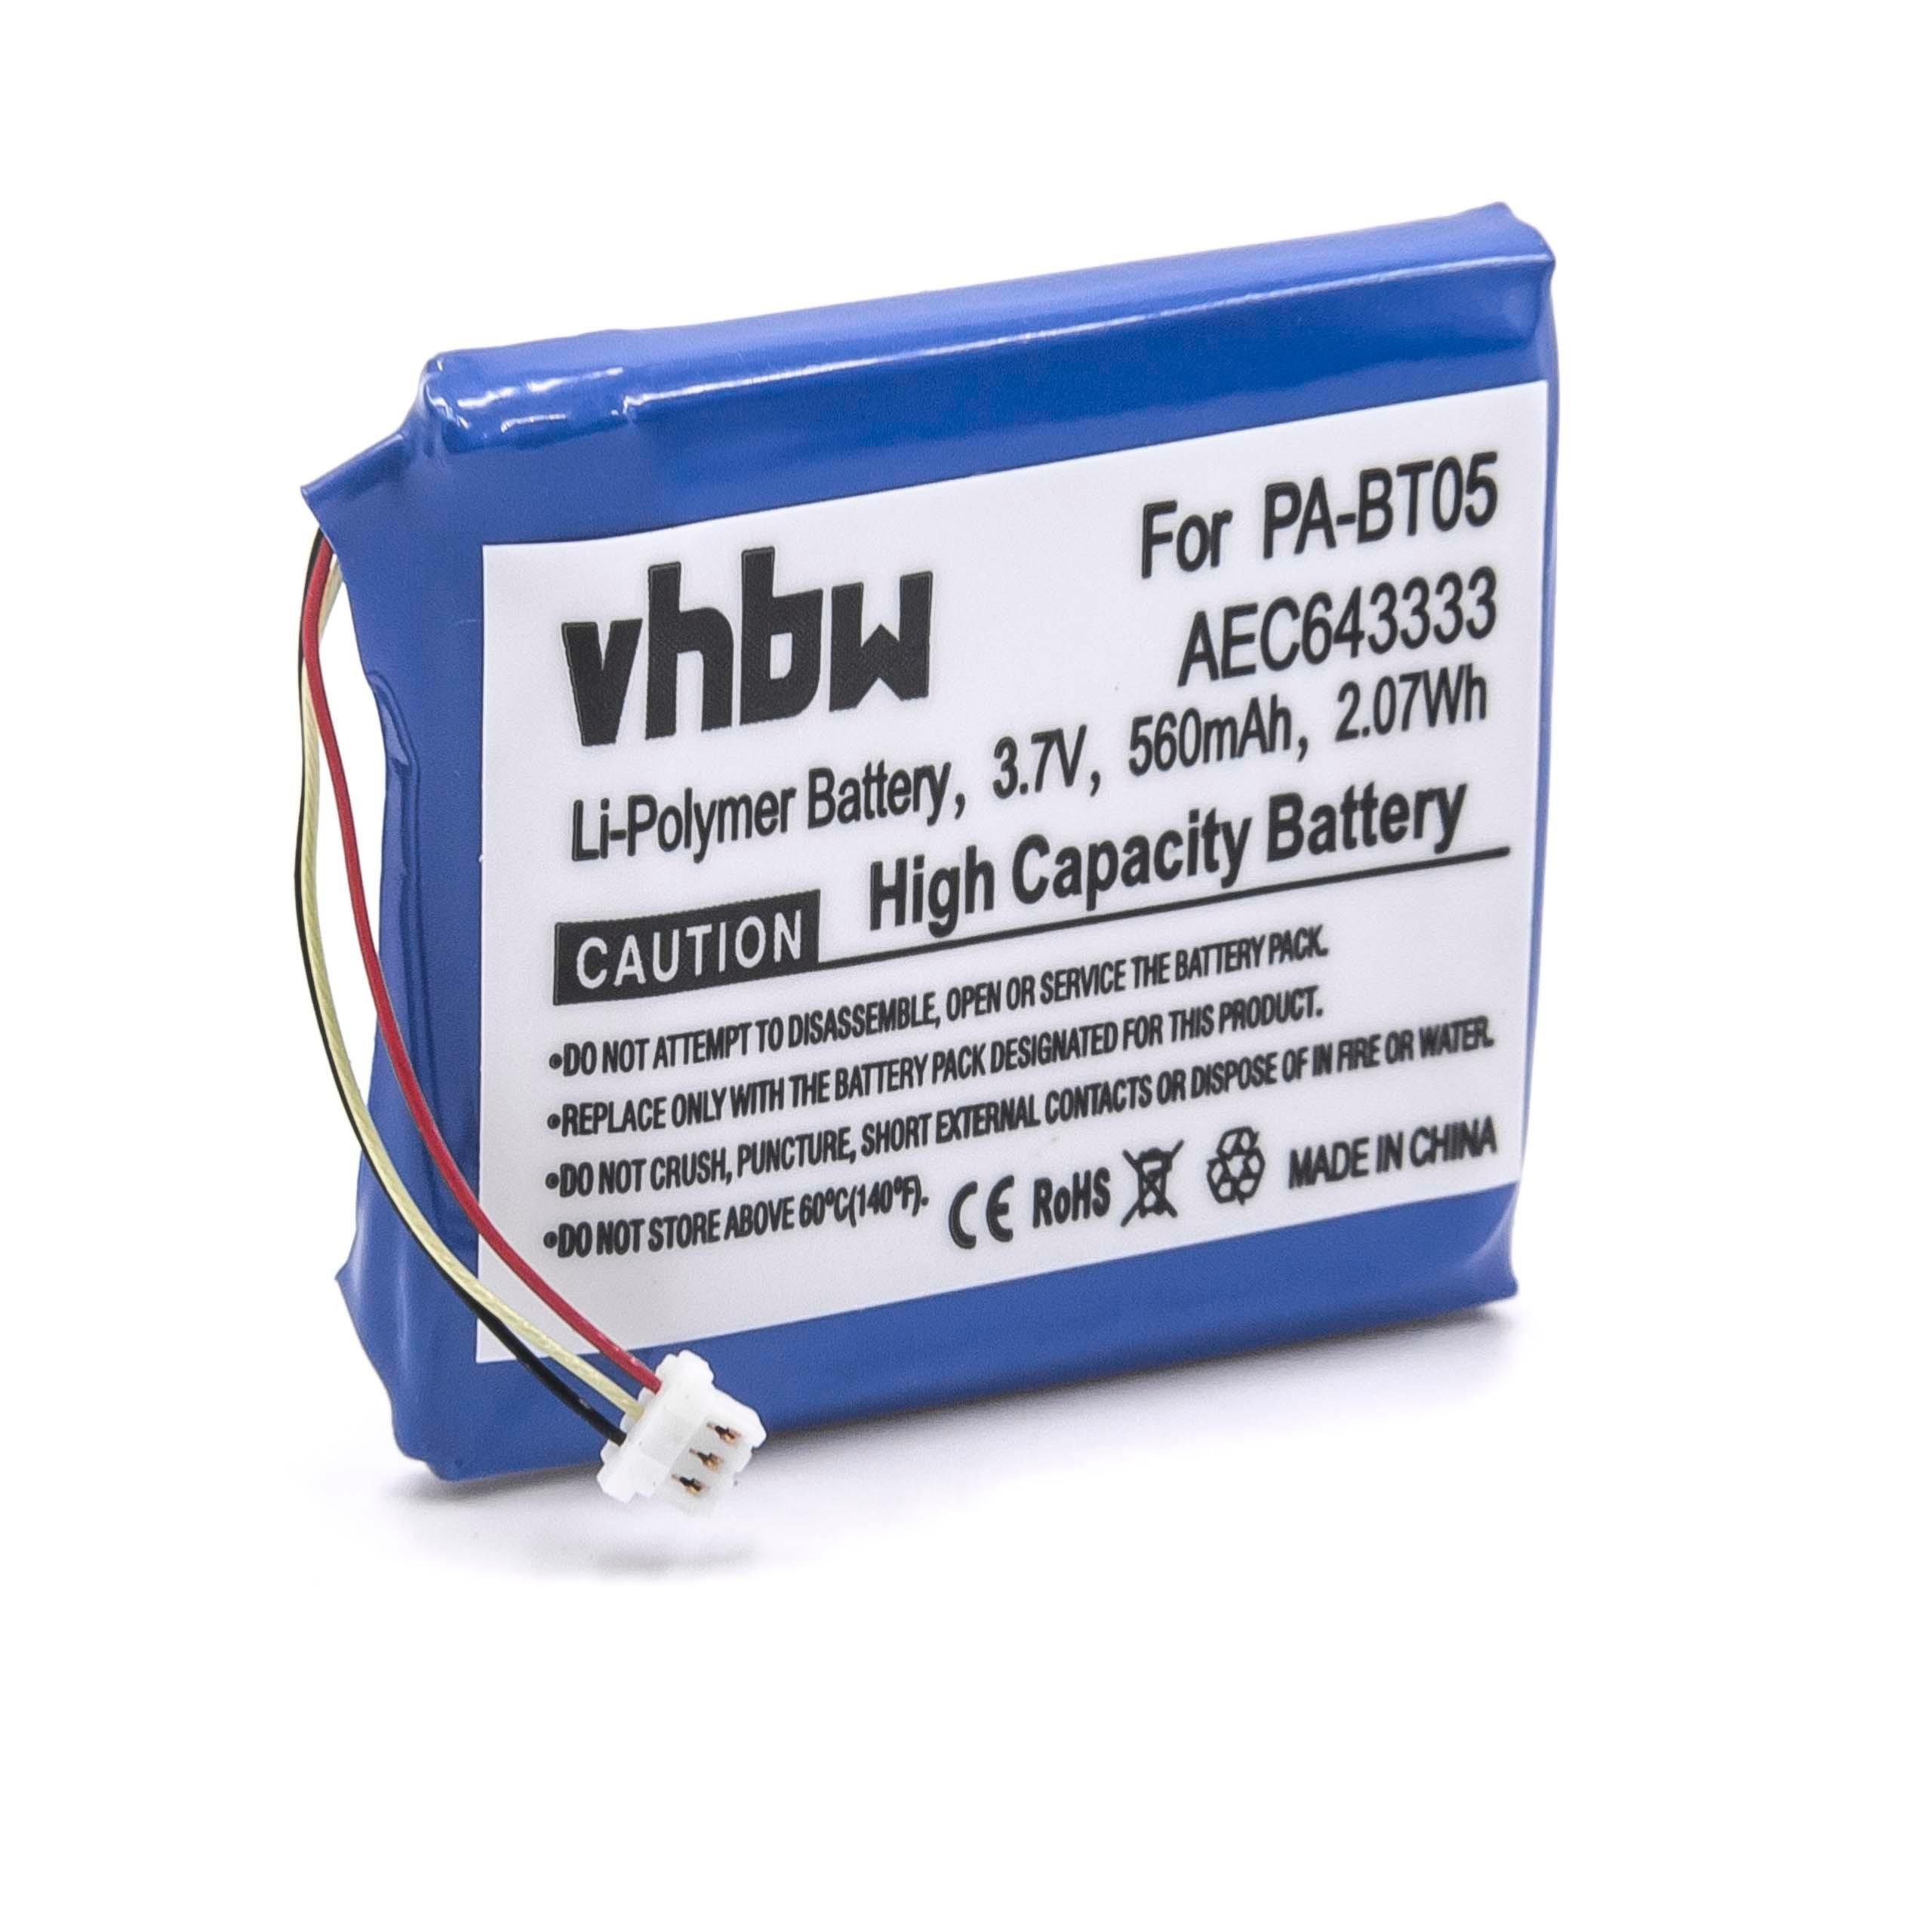 vhbw Ersatz für Beats PA-BT05, AEC643333 für Akku Li-Polymer 560 mAh (3,7 V)